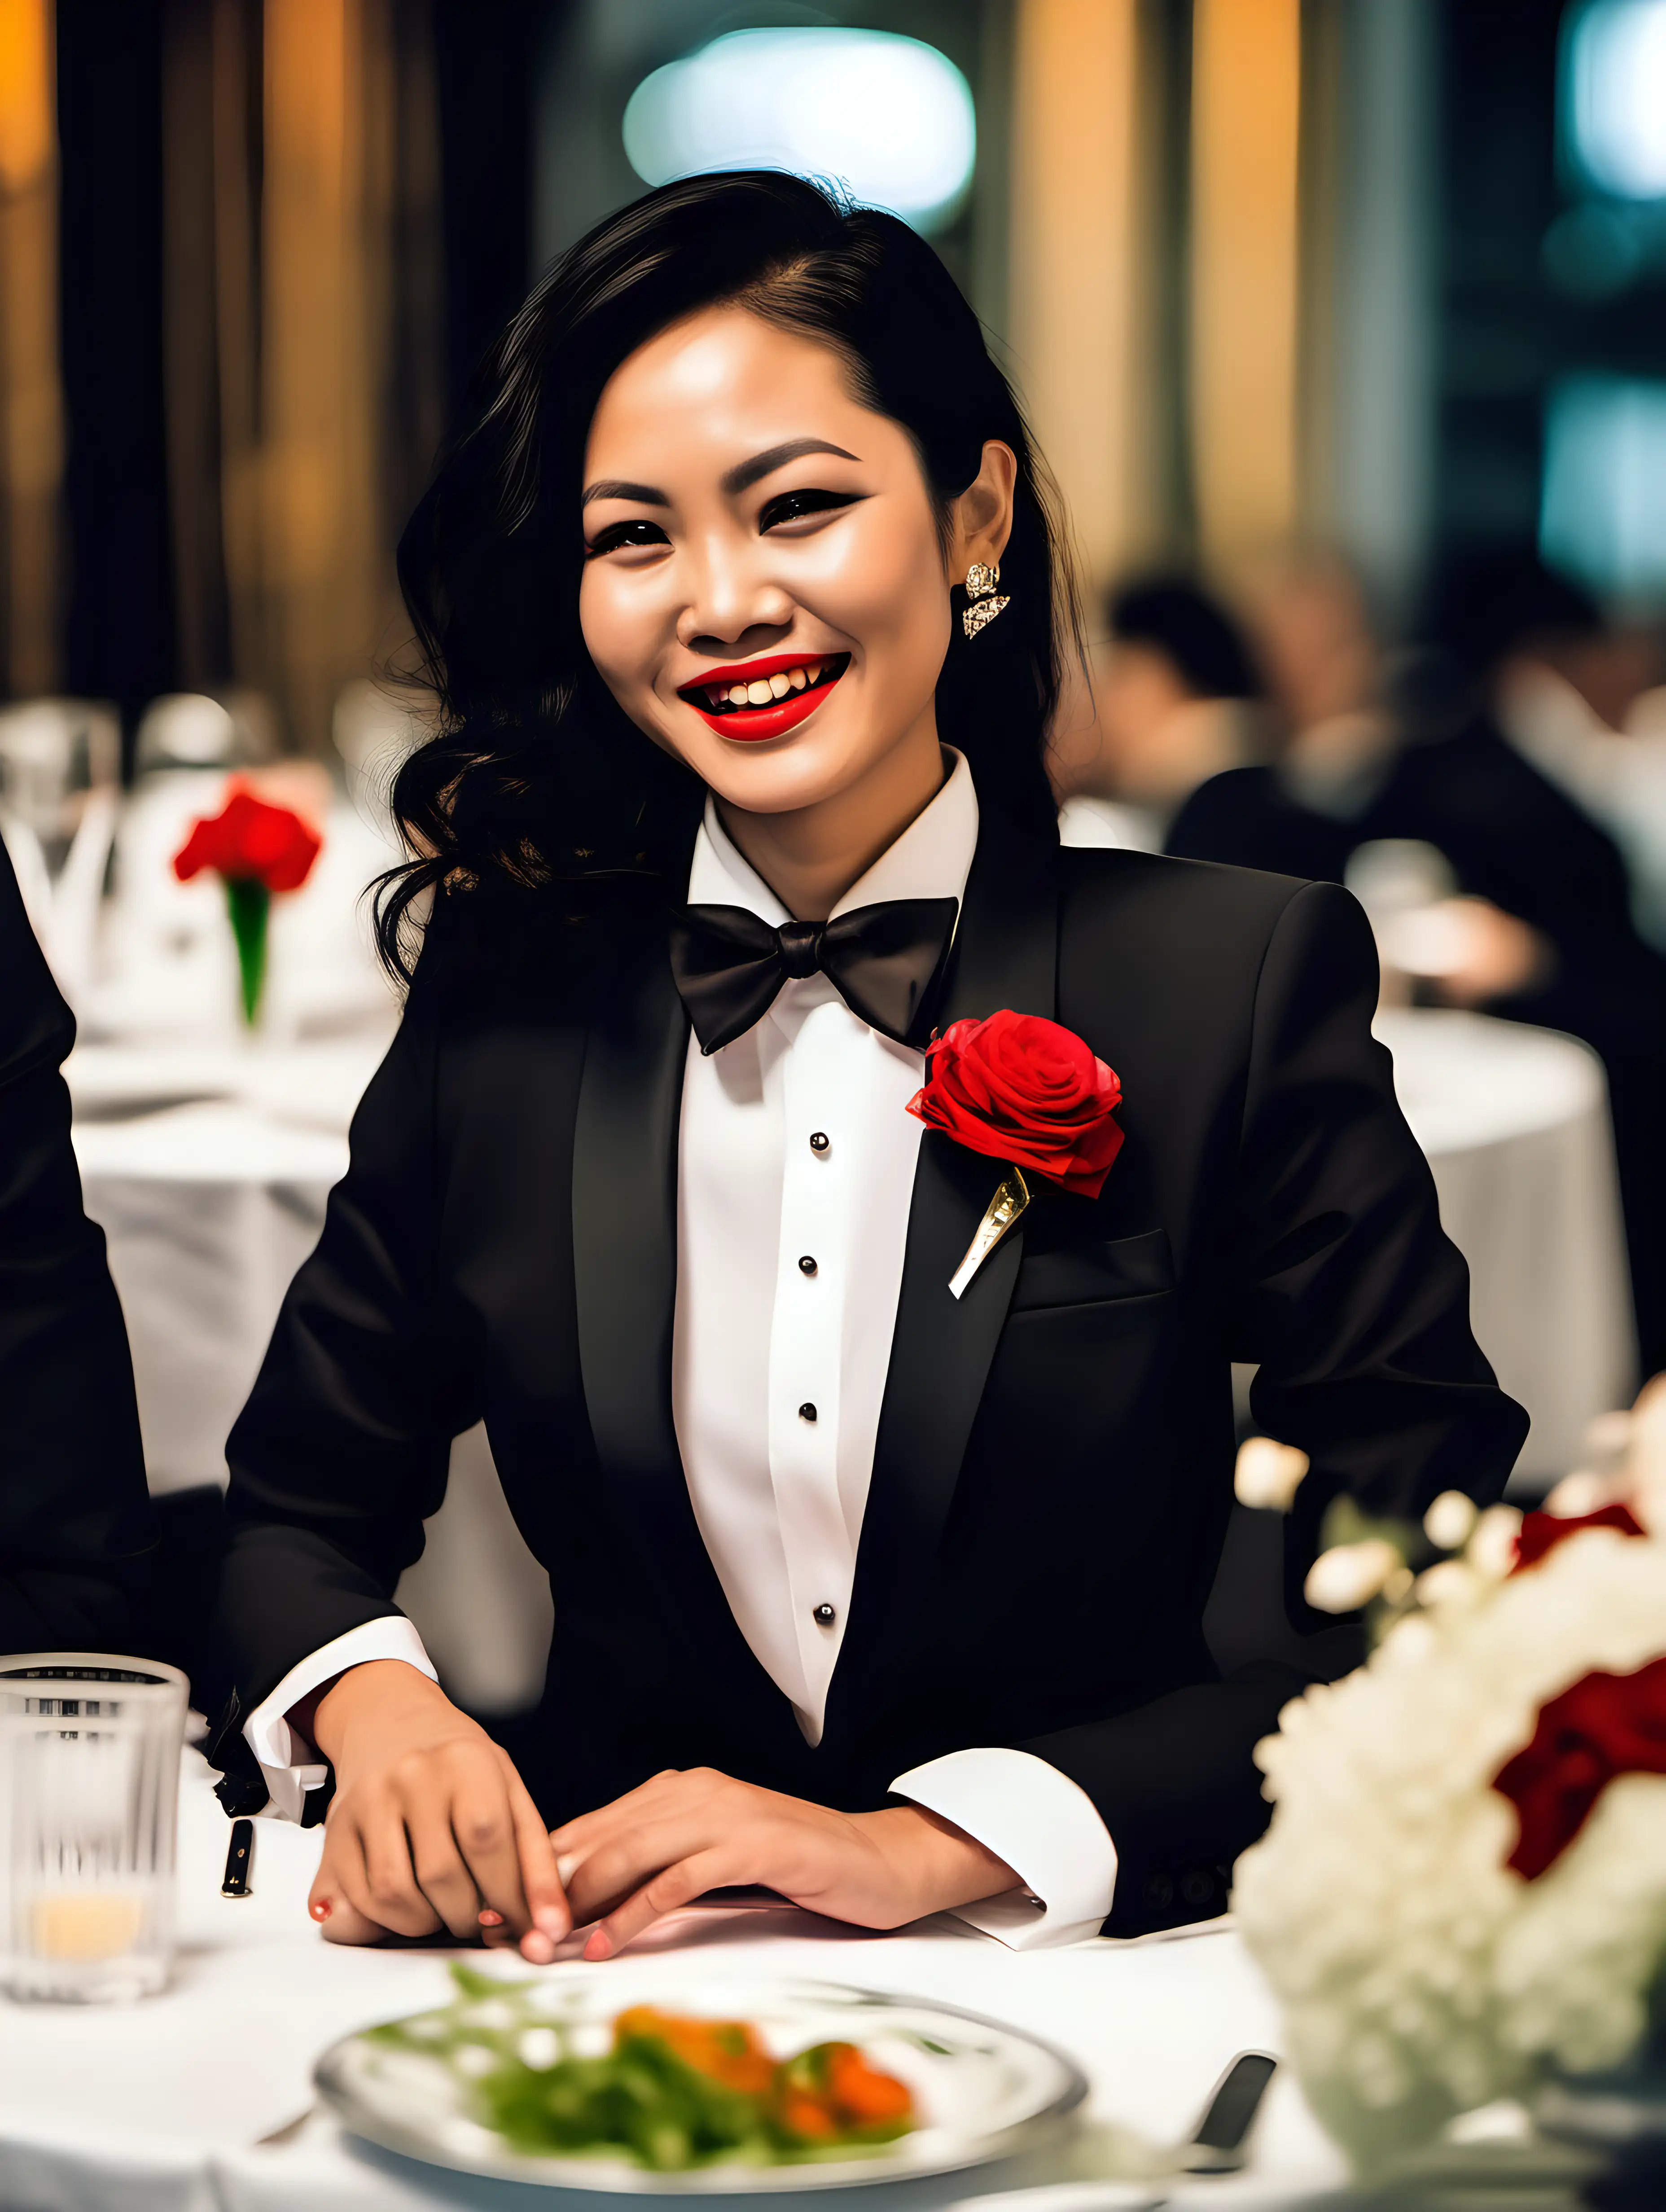 Elegant-Vietnamese-Woman-in-Formal-Tuxedo-at-Dinner-Table